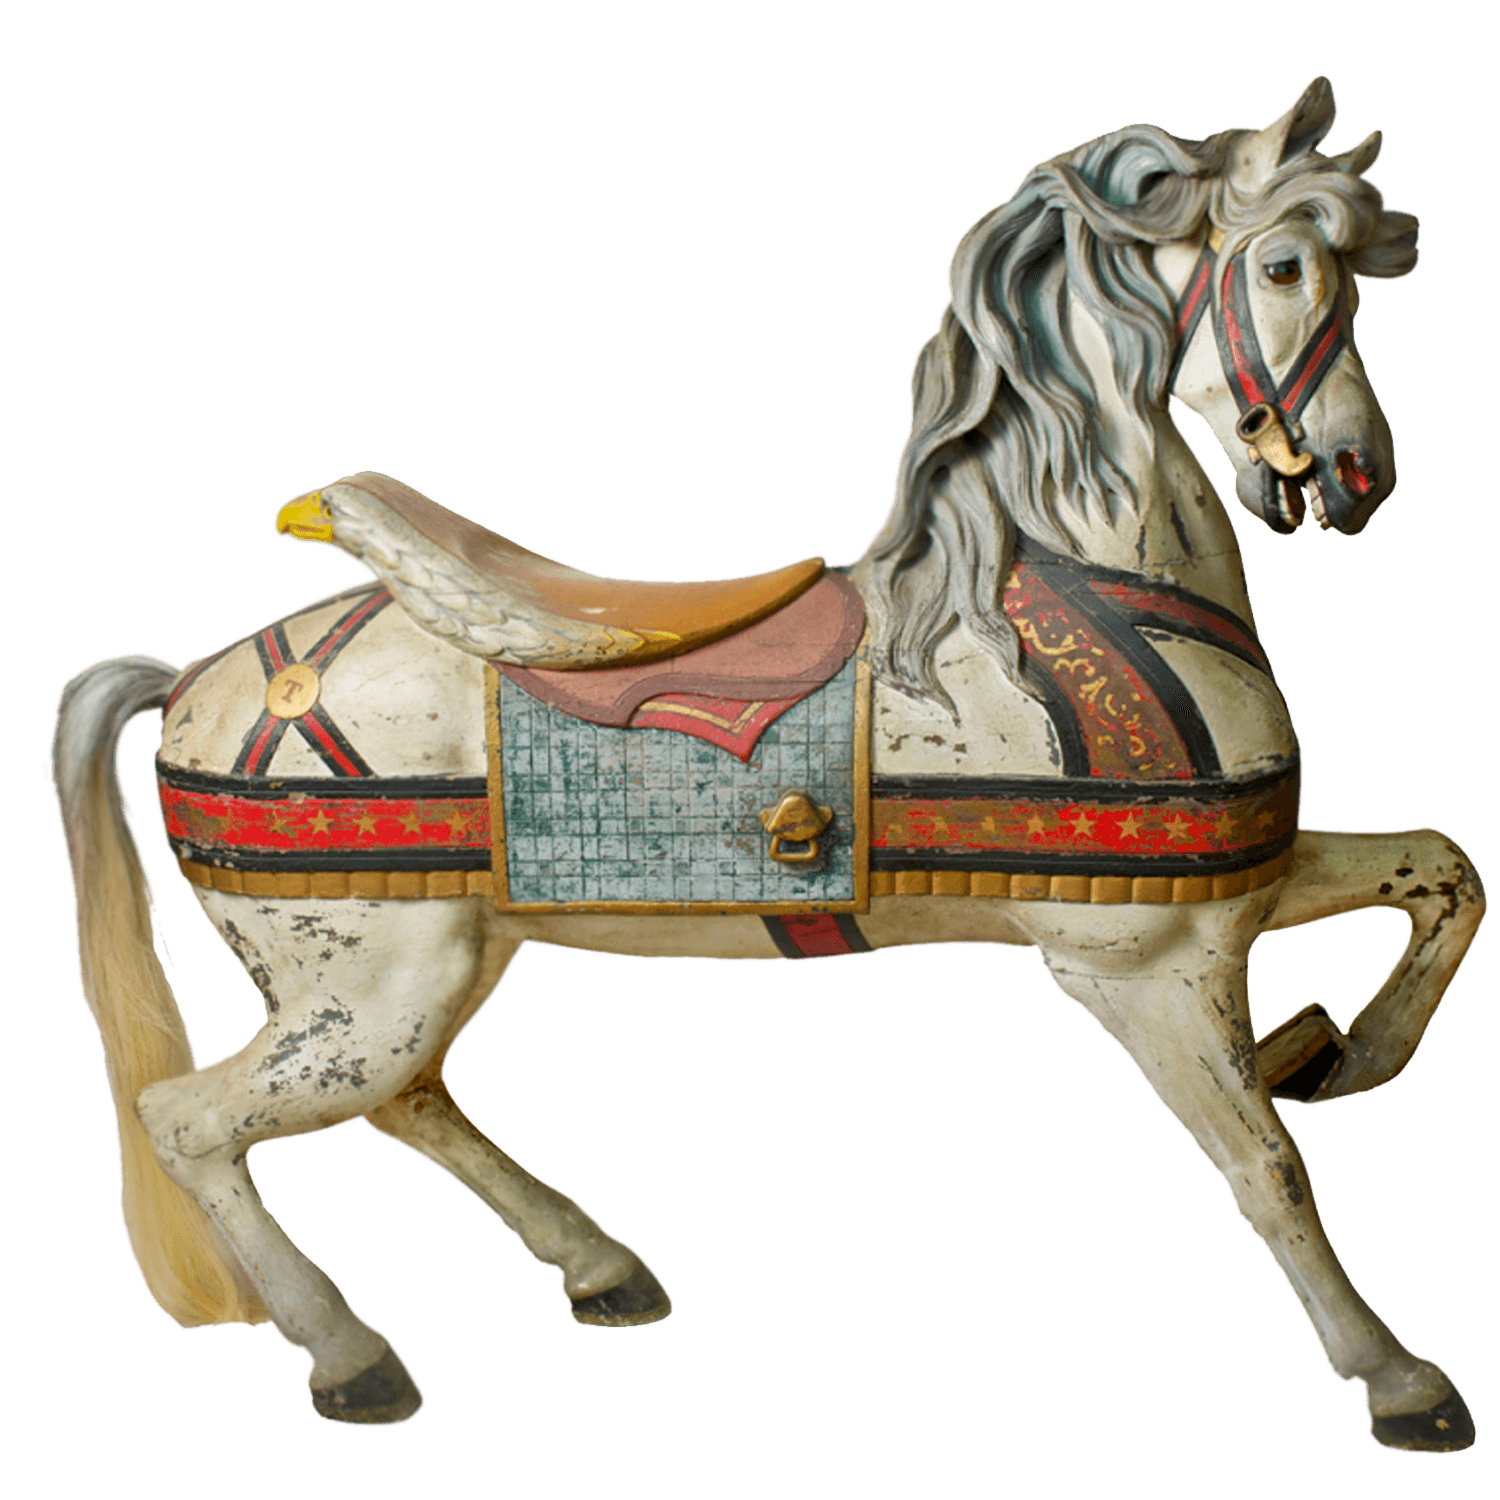 Immagine Trasparente del cavallo del cavallo della carosello